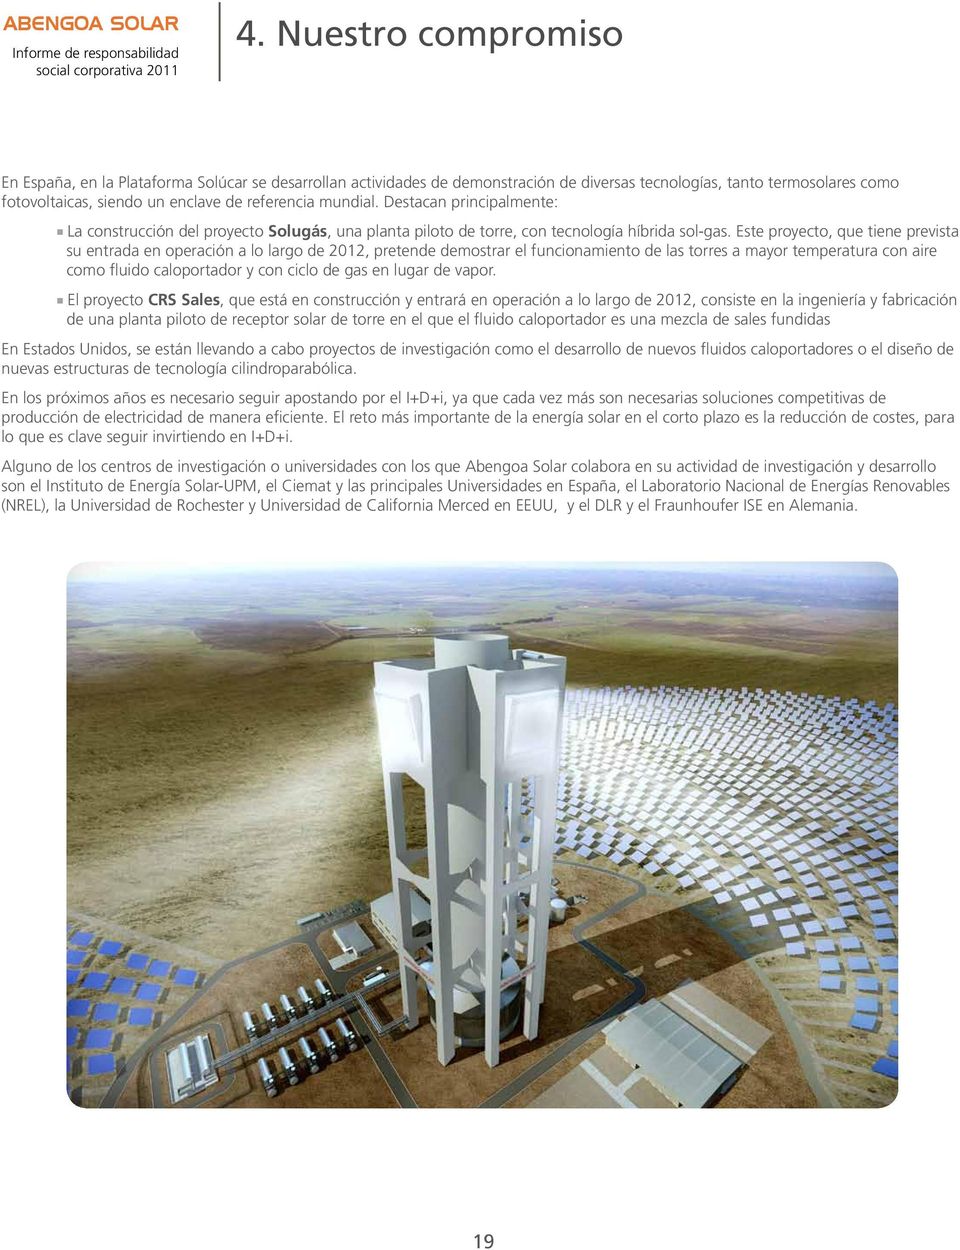 Este proyecto, que tiene prevista su entrada en operación a lo largo de 2012, pretende demostrar el funcionamiento de las torres a mayor temperatura con aire como fluido caloportador y con ciclo de